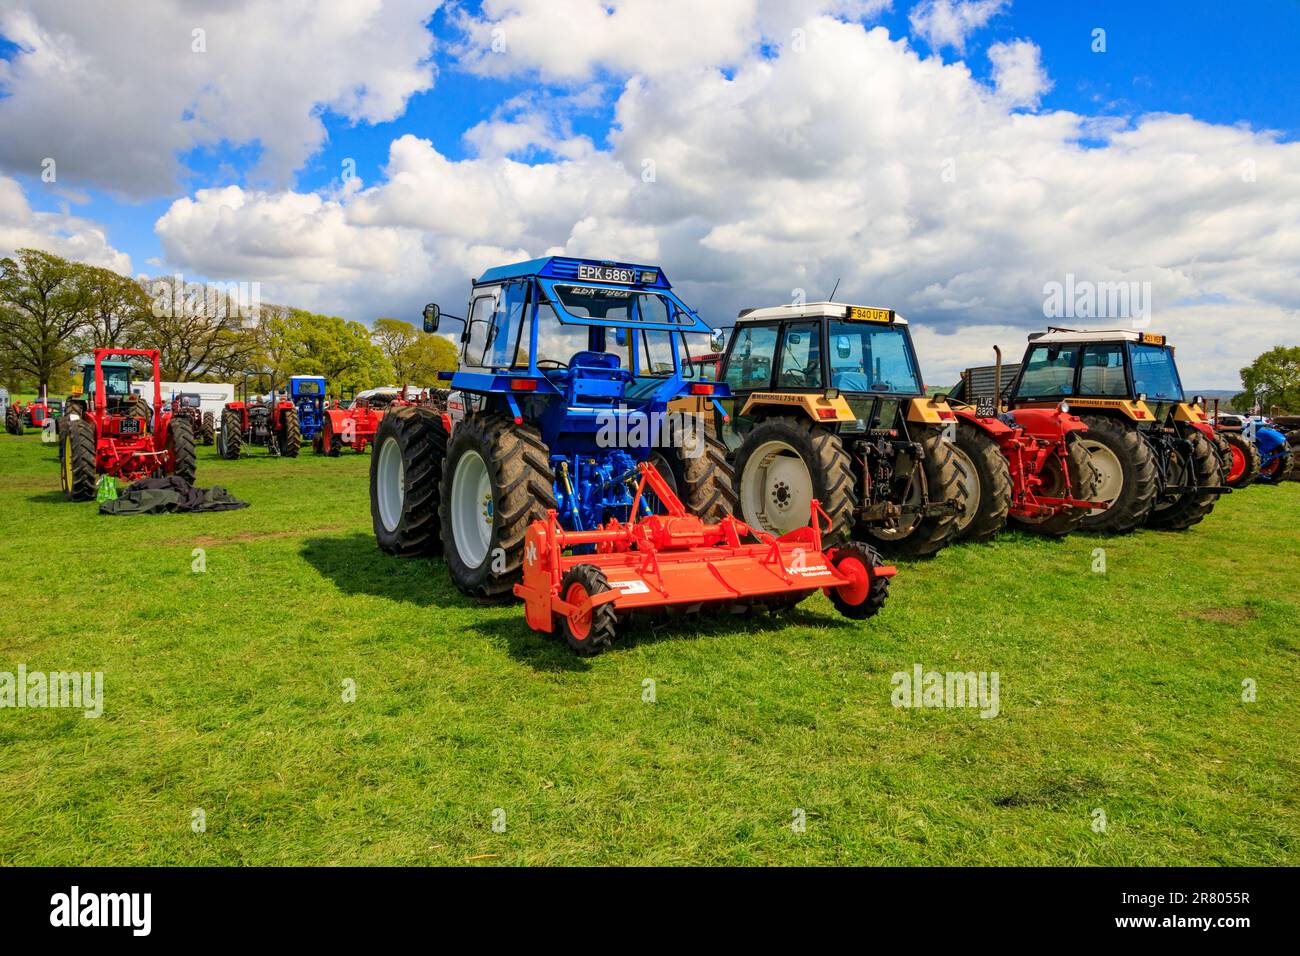 Une exposition de tracteurs conservés et restaurés au rassemblement de vapeur d'Abbey Hill, Yeovil, Somerset, Angleterre, Royaume-Uni Banque D'Images